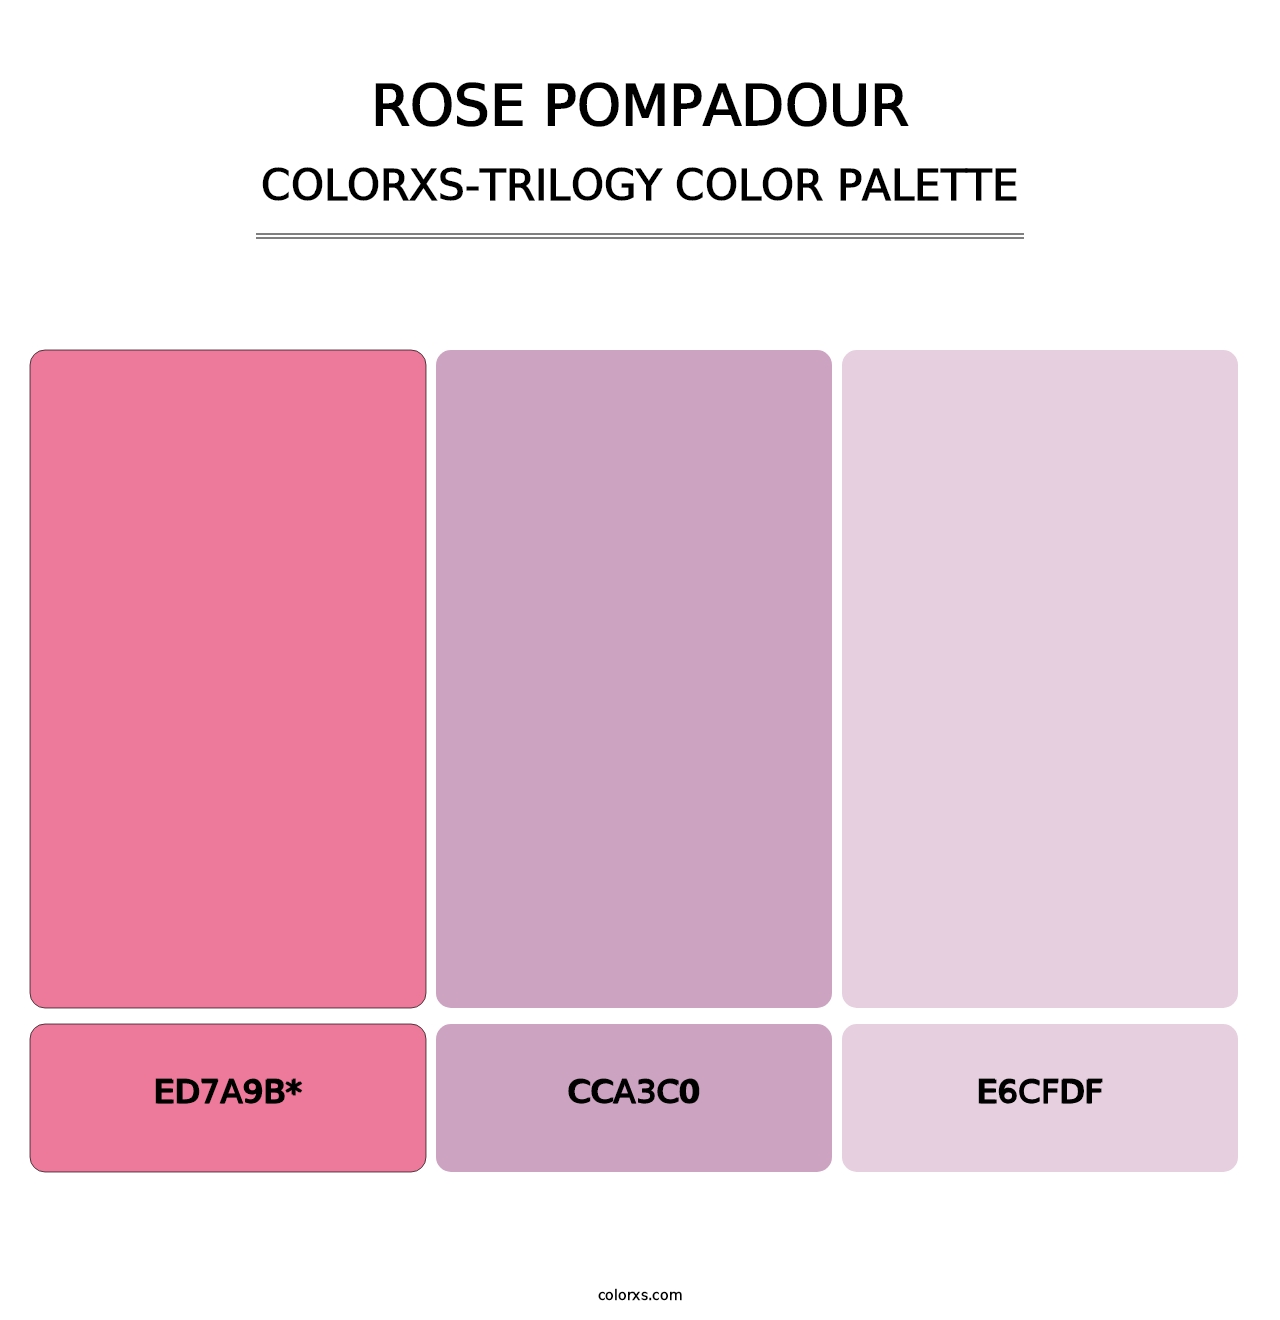 Rose Pompadour - Colorxs Trilogy Palette